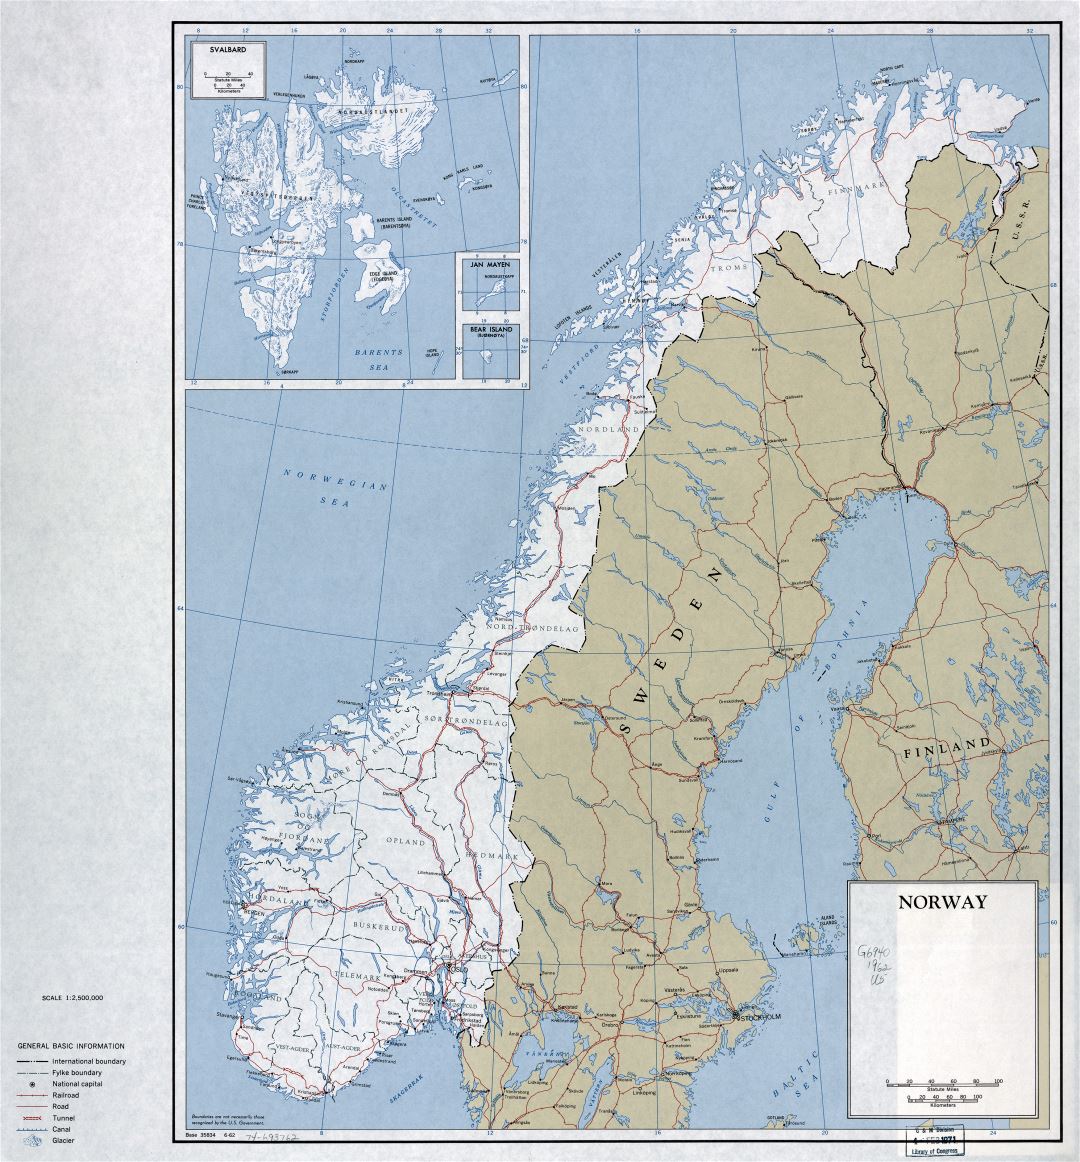 Grande detallado mapa política y administrativa de Noruega con carreteras, ferrocarriles y principales ciudades - 1962